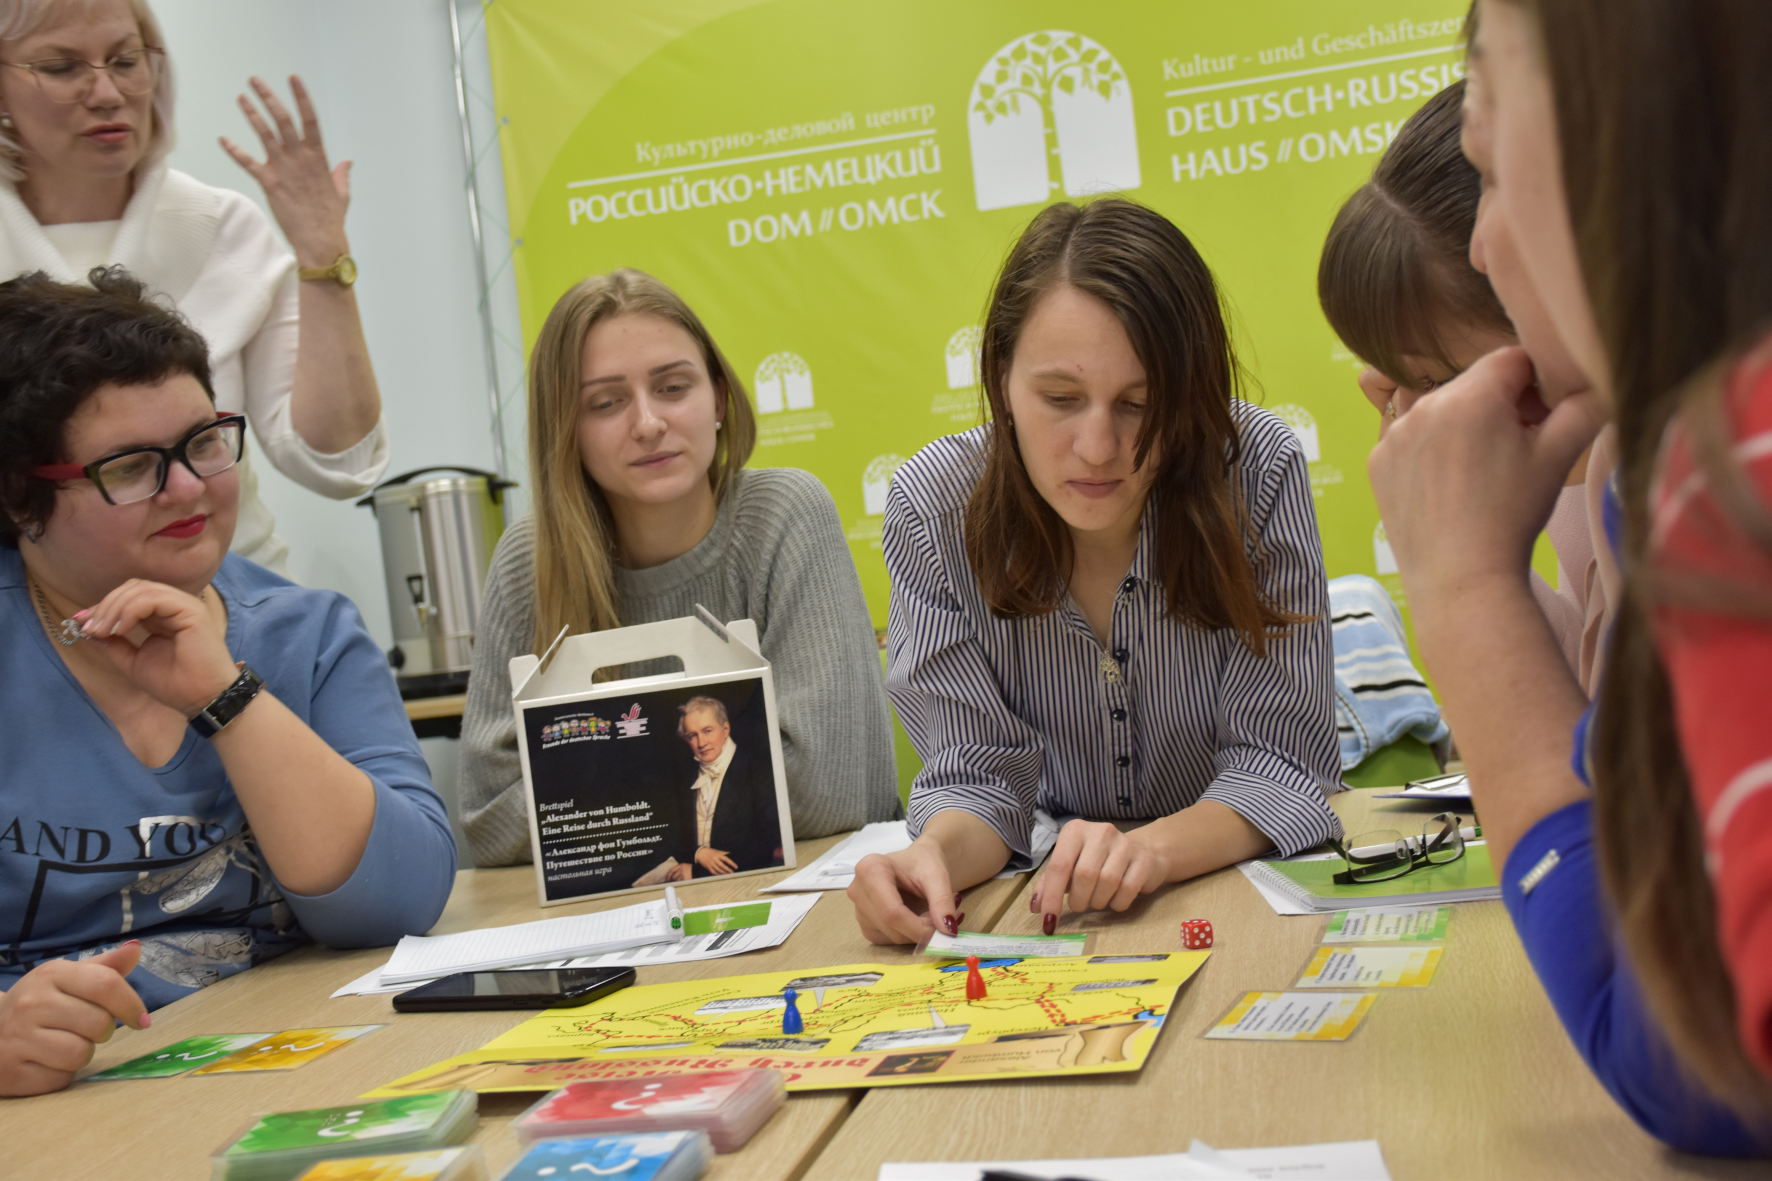 Svetlana Gauss links aussen Brettspiel Humboldt Foto Deutsch Russisches Haus